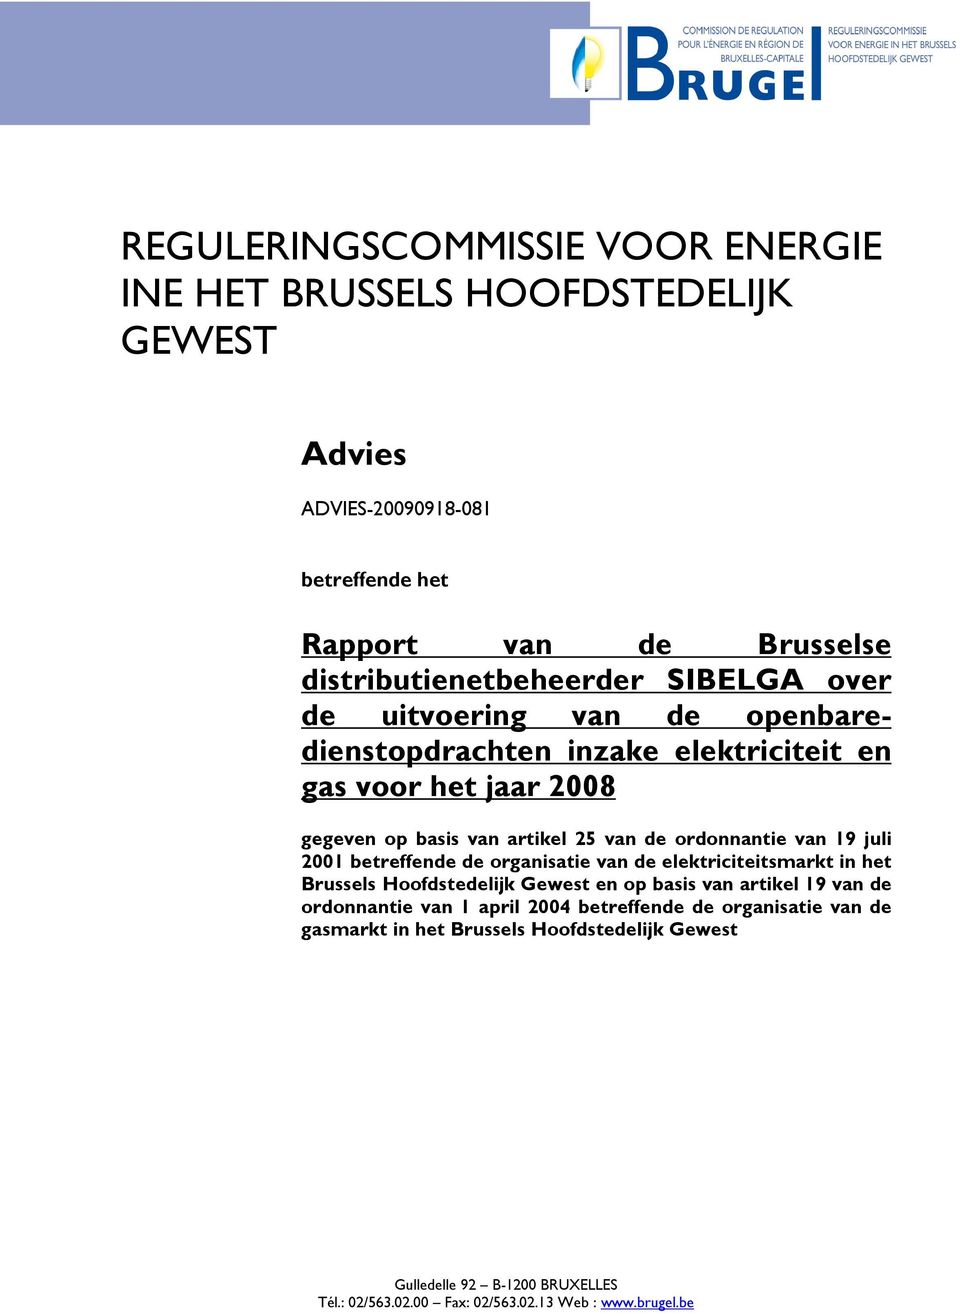 juli 2001 betreffende de organisatie van de elektriciteitsmarkt in het Brussels Hoofdstedelijk Gewest en op basis van artikel 19 van de ordonnantie van 1 april 2004